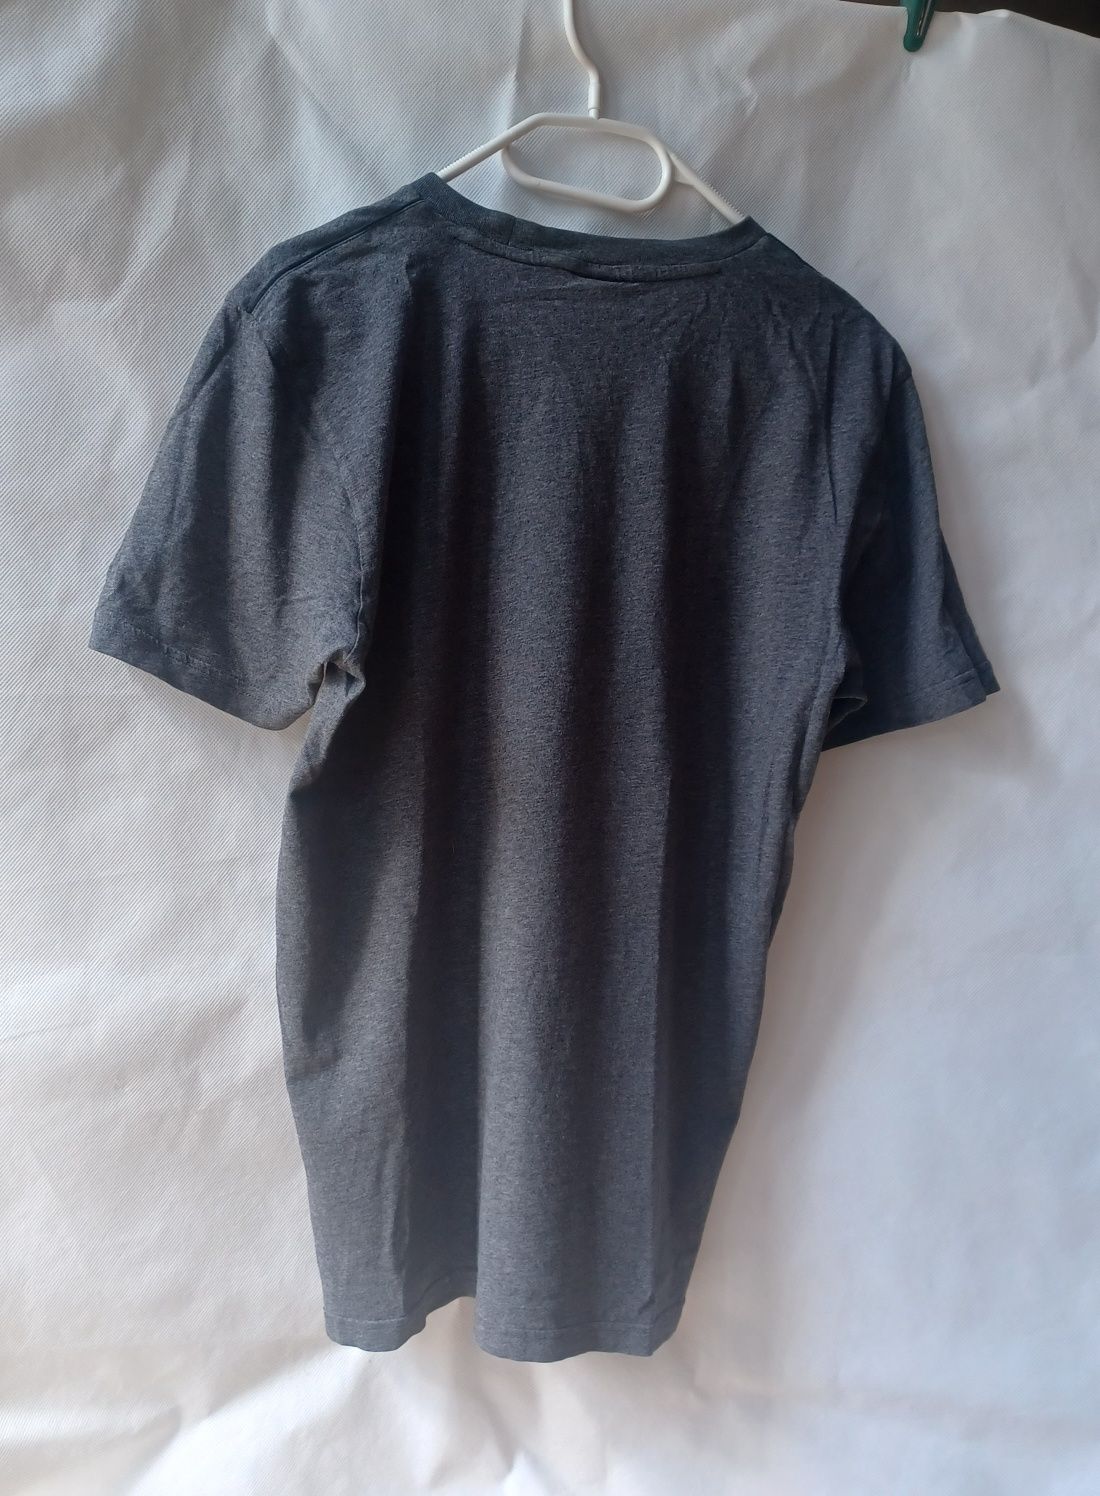 Adidas szara koszulka T-shirt podkoszulek szary bluzka męska chłopięca